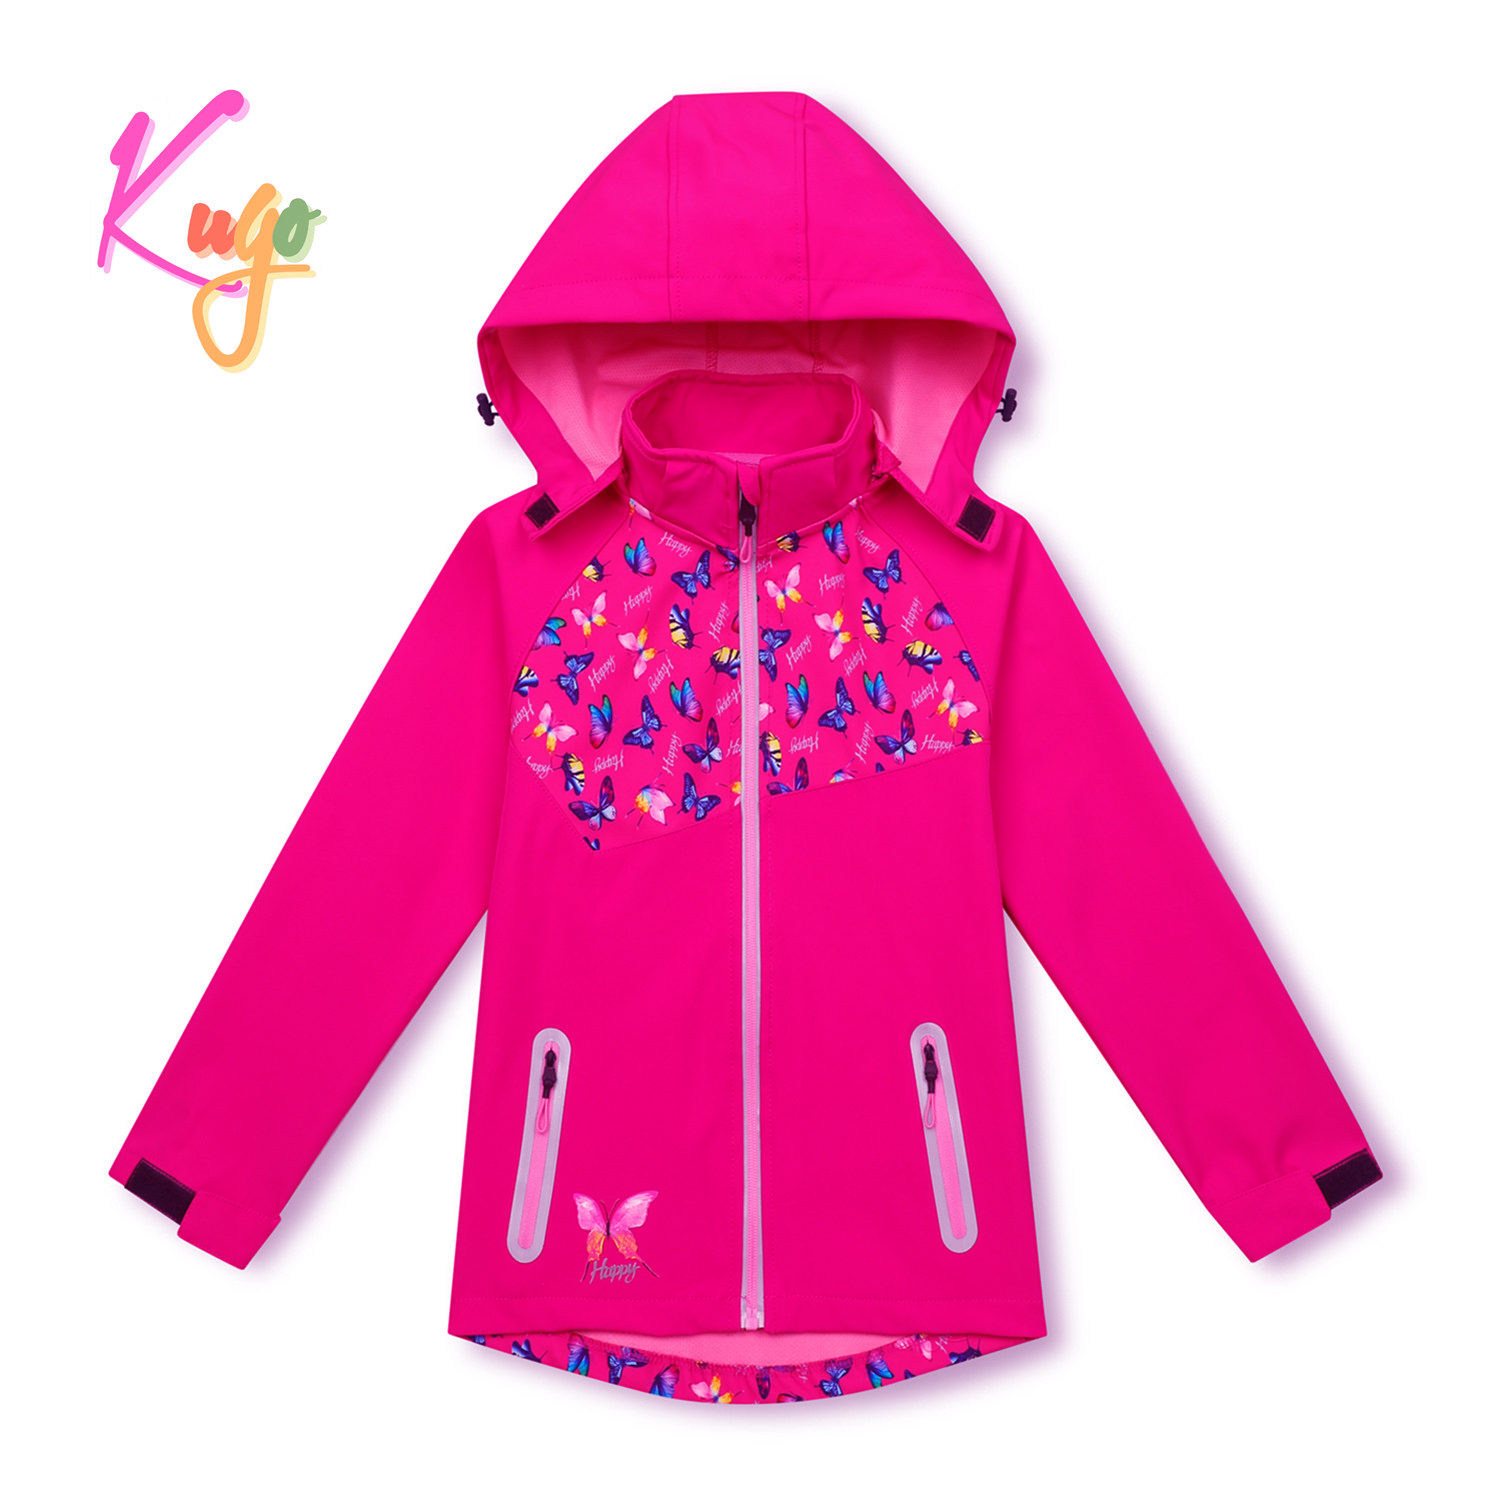 Dívčí softshellová bunda - KUGO HK3123, růžová Barva: Růžová, Velikost: 104